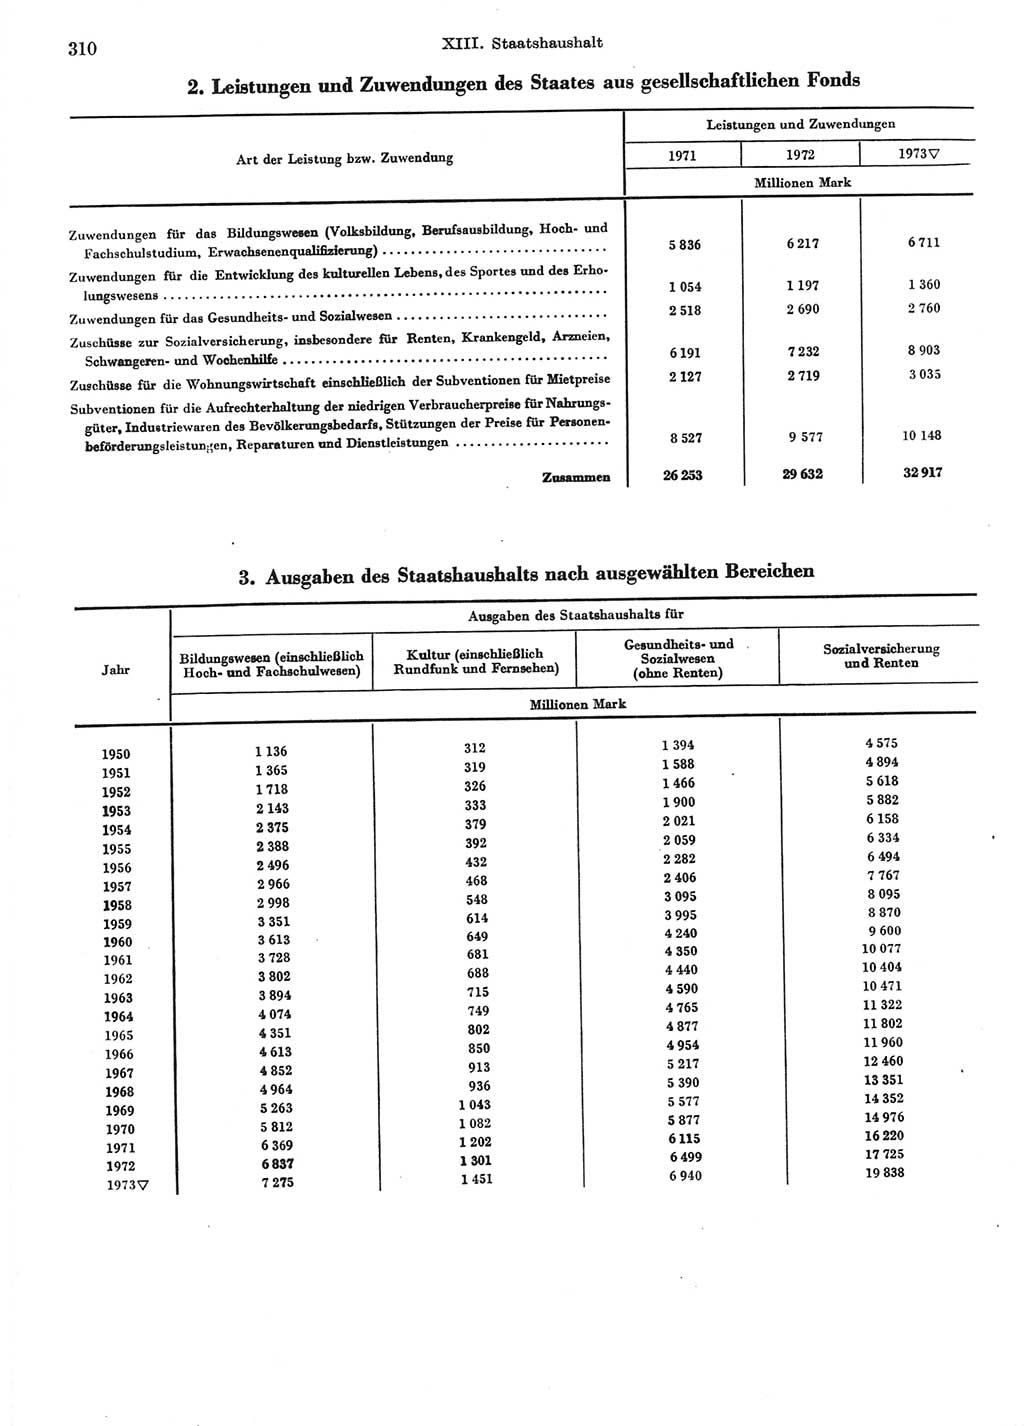 Statistisches Jahrbuch der Deutschen Demokratischen Republik (DDR) 1974, Seite 310 (Stat. Jb. DDR 1974, S. 310)